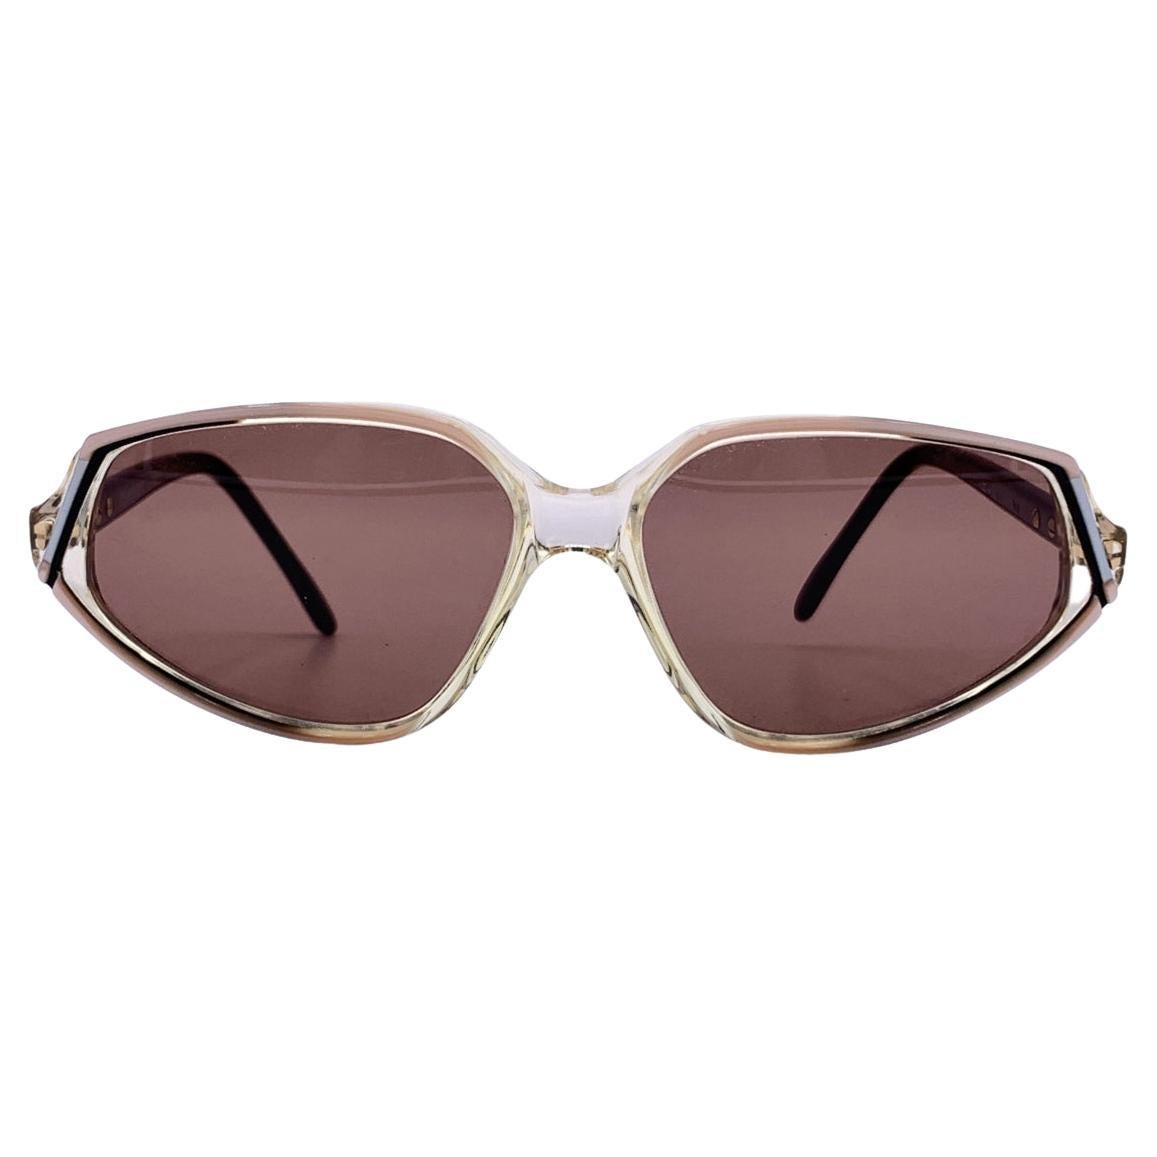 Yves Saint Laurent Vintage Women Sunglasses Nemesis 58/14 140mm For Sale